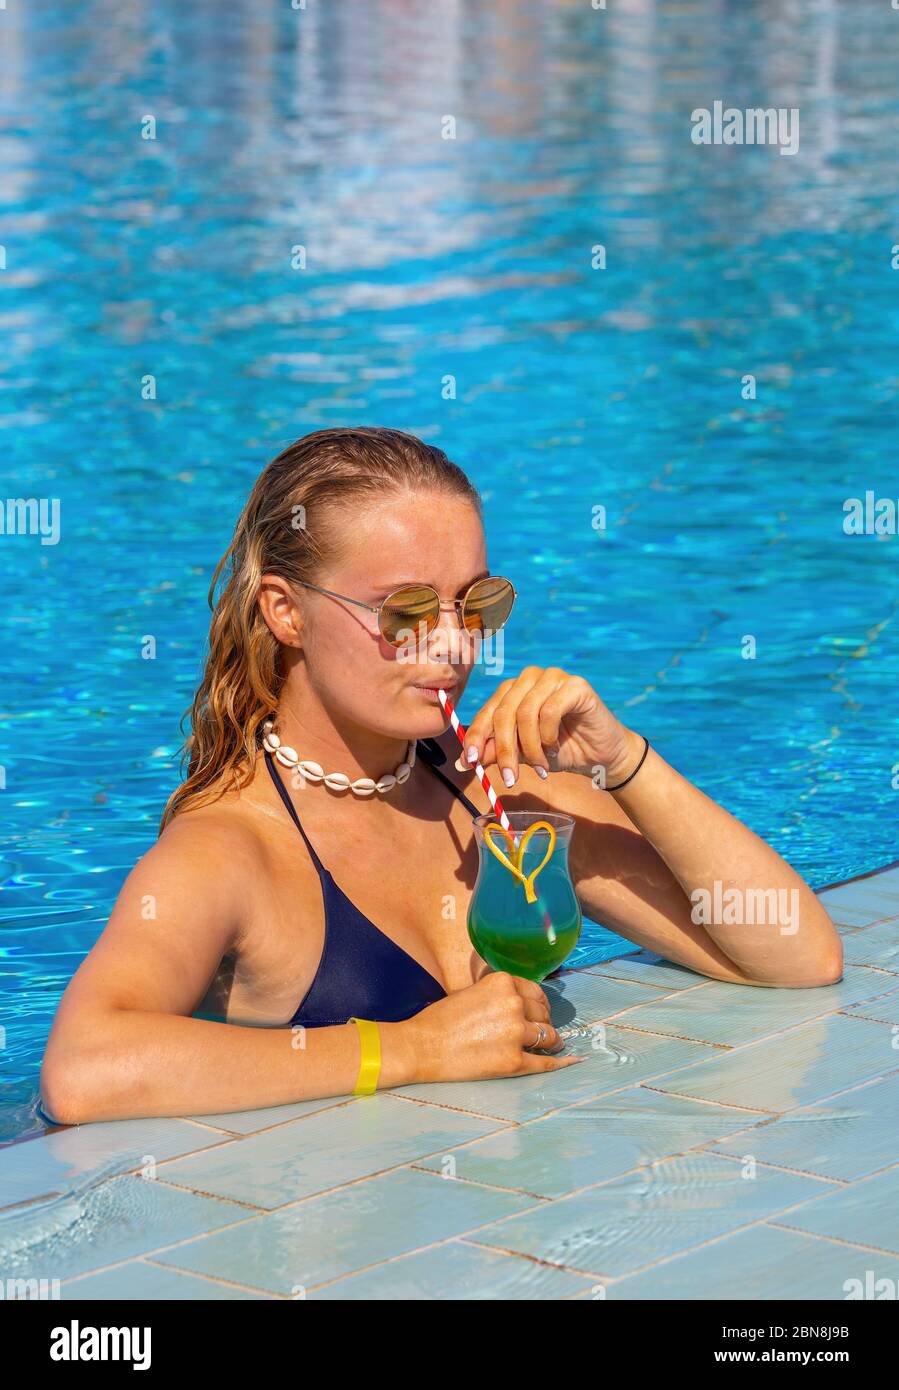 Une jeune femme de race blanche boit un cocktail dans la piscine Banque D'Images